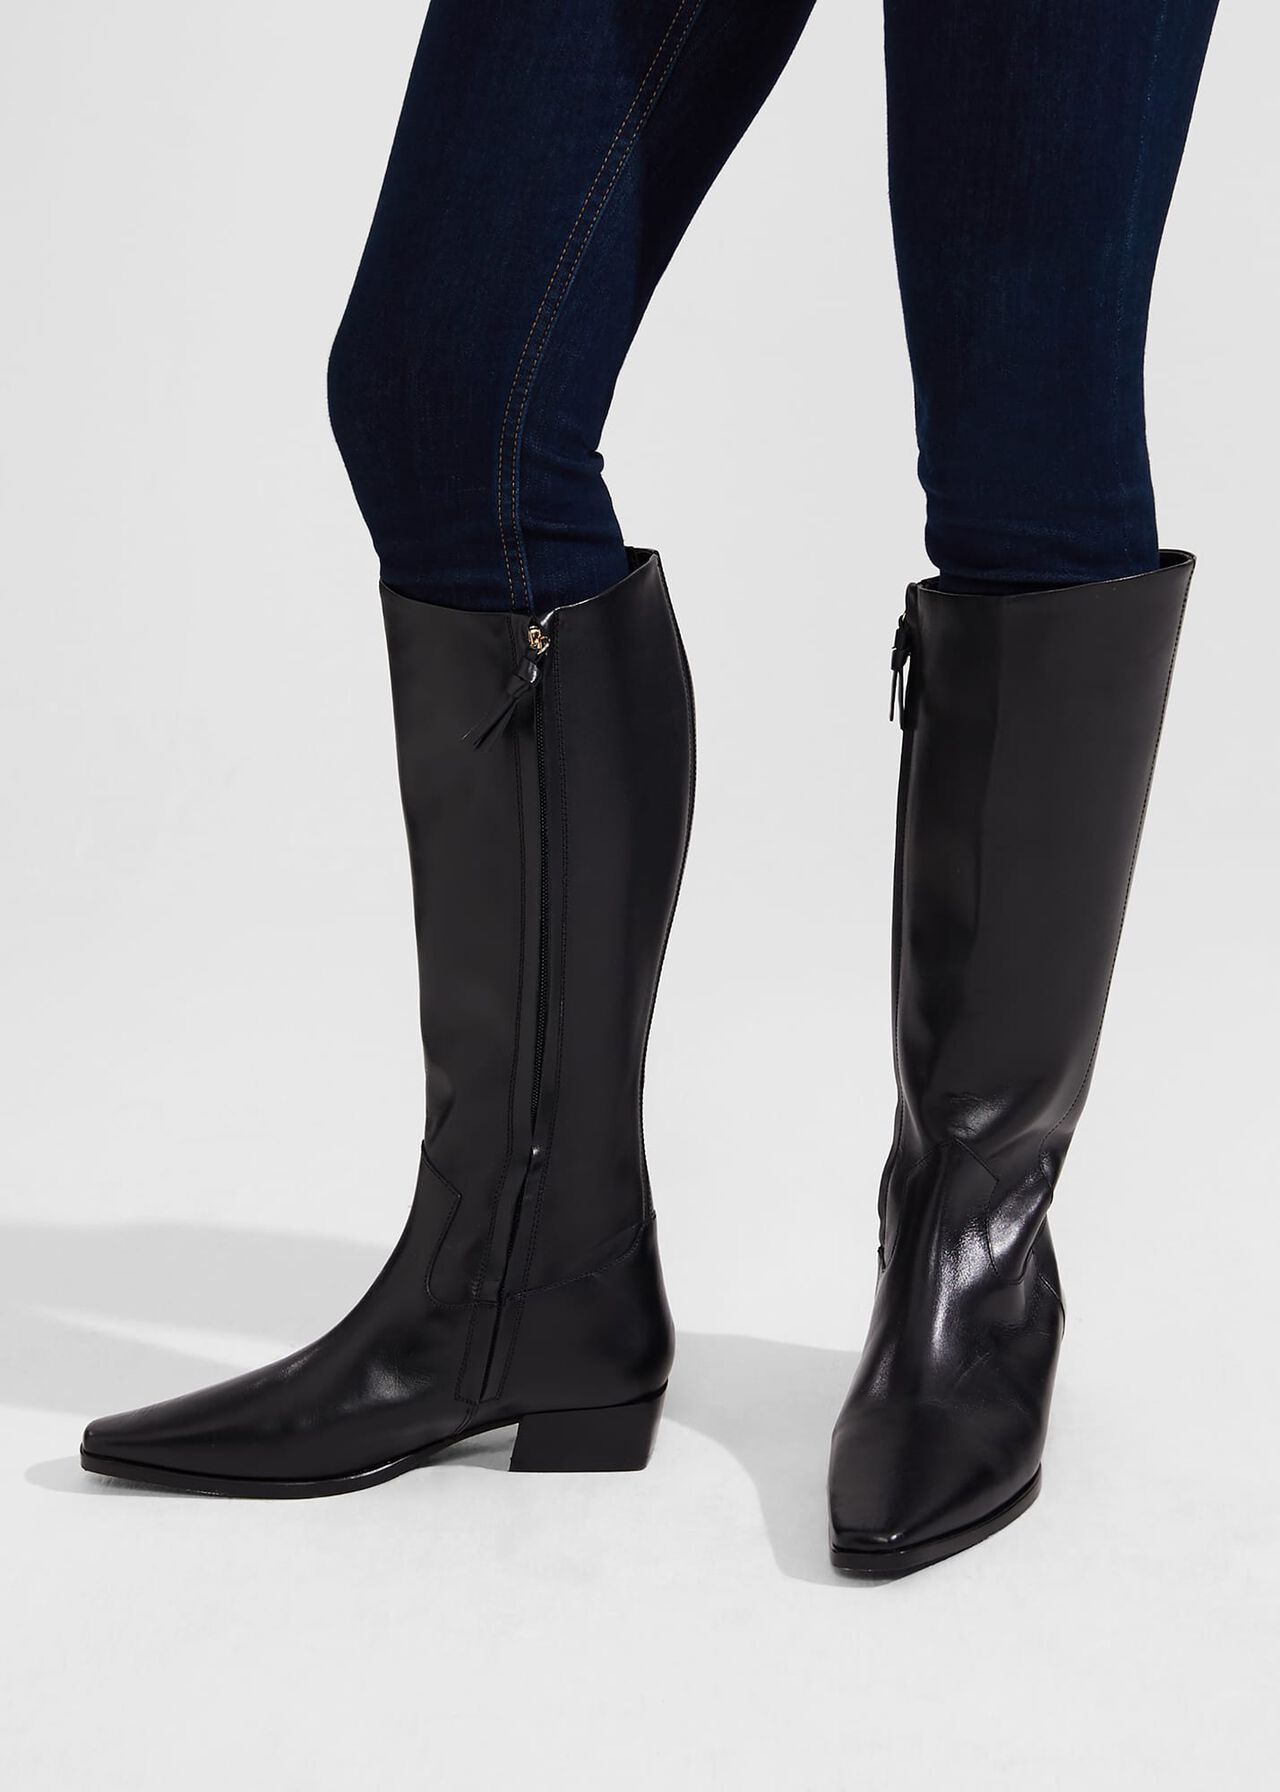 Rosanna Western Knee Boots, Black, hi-res